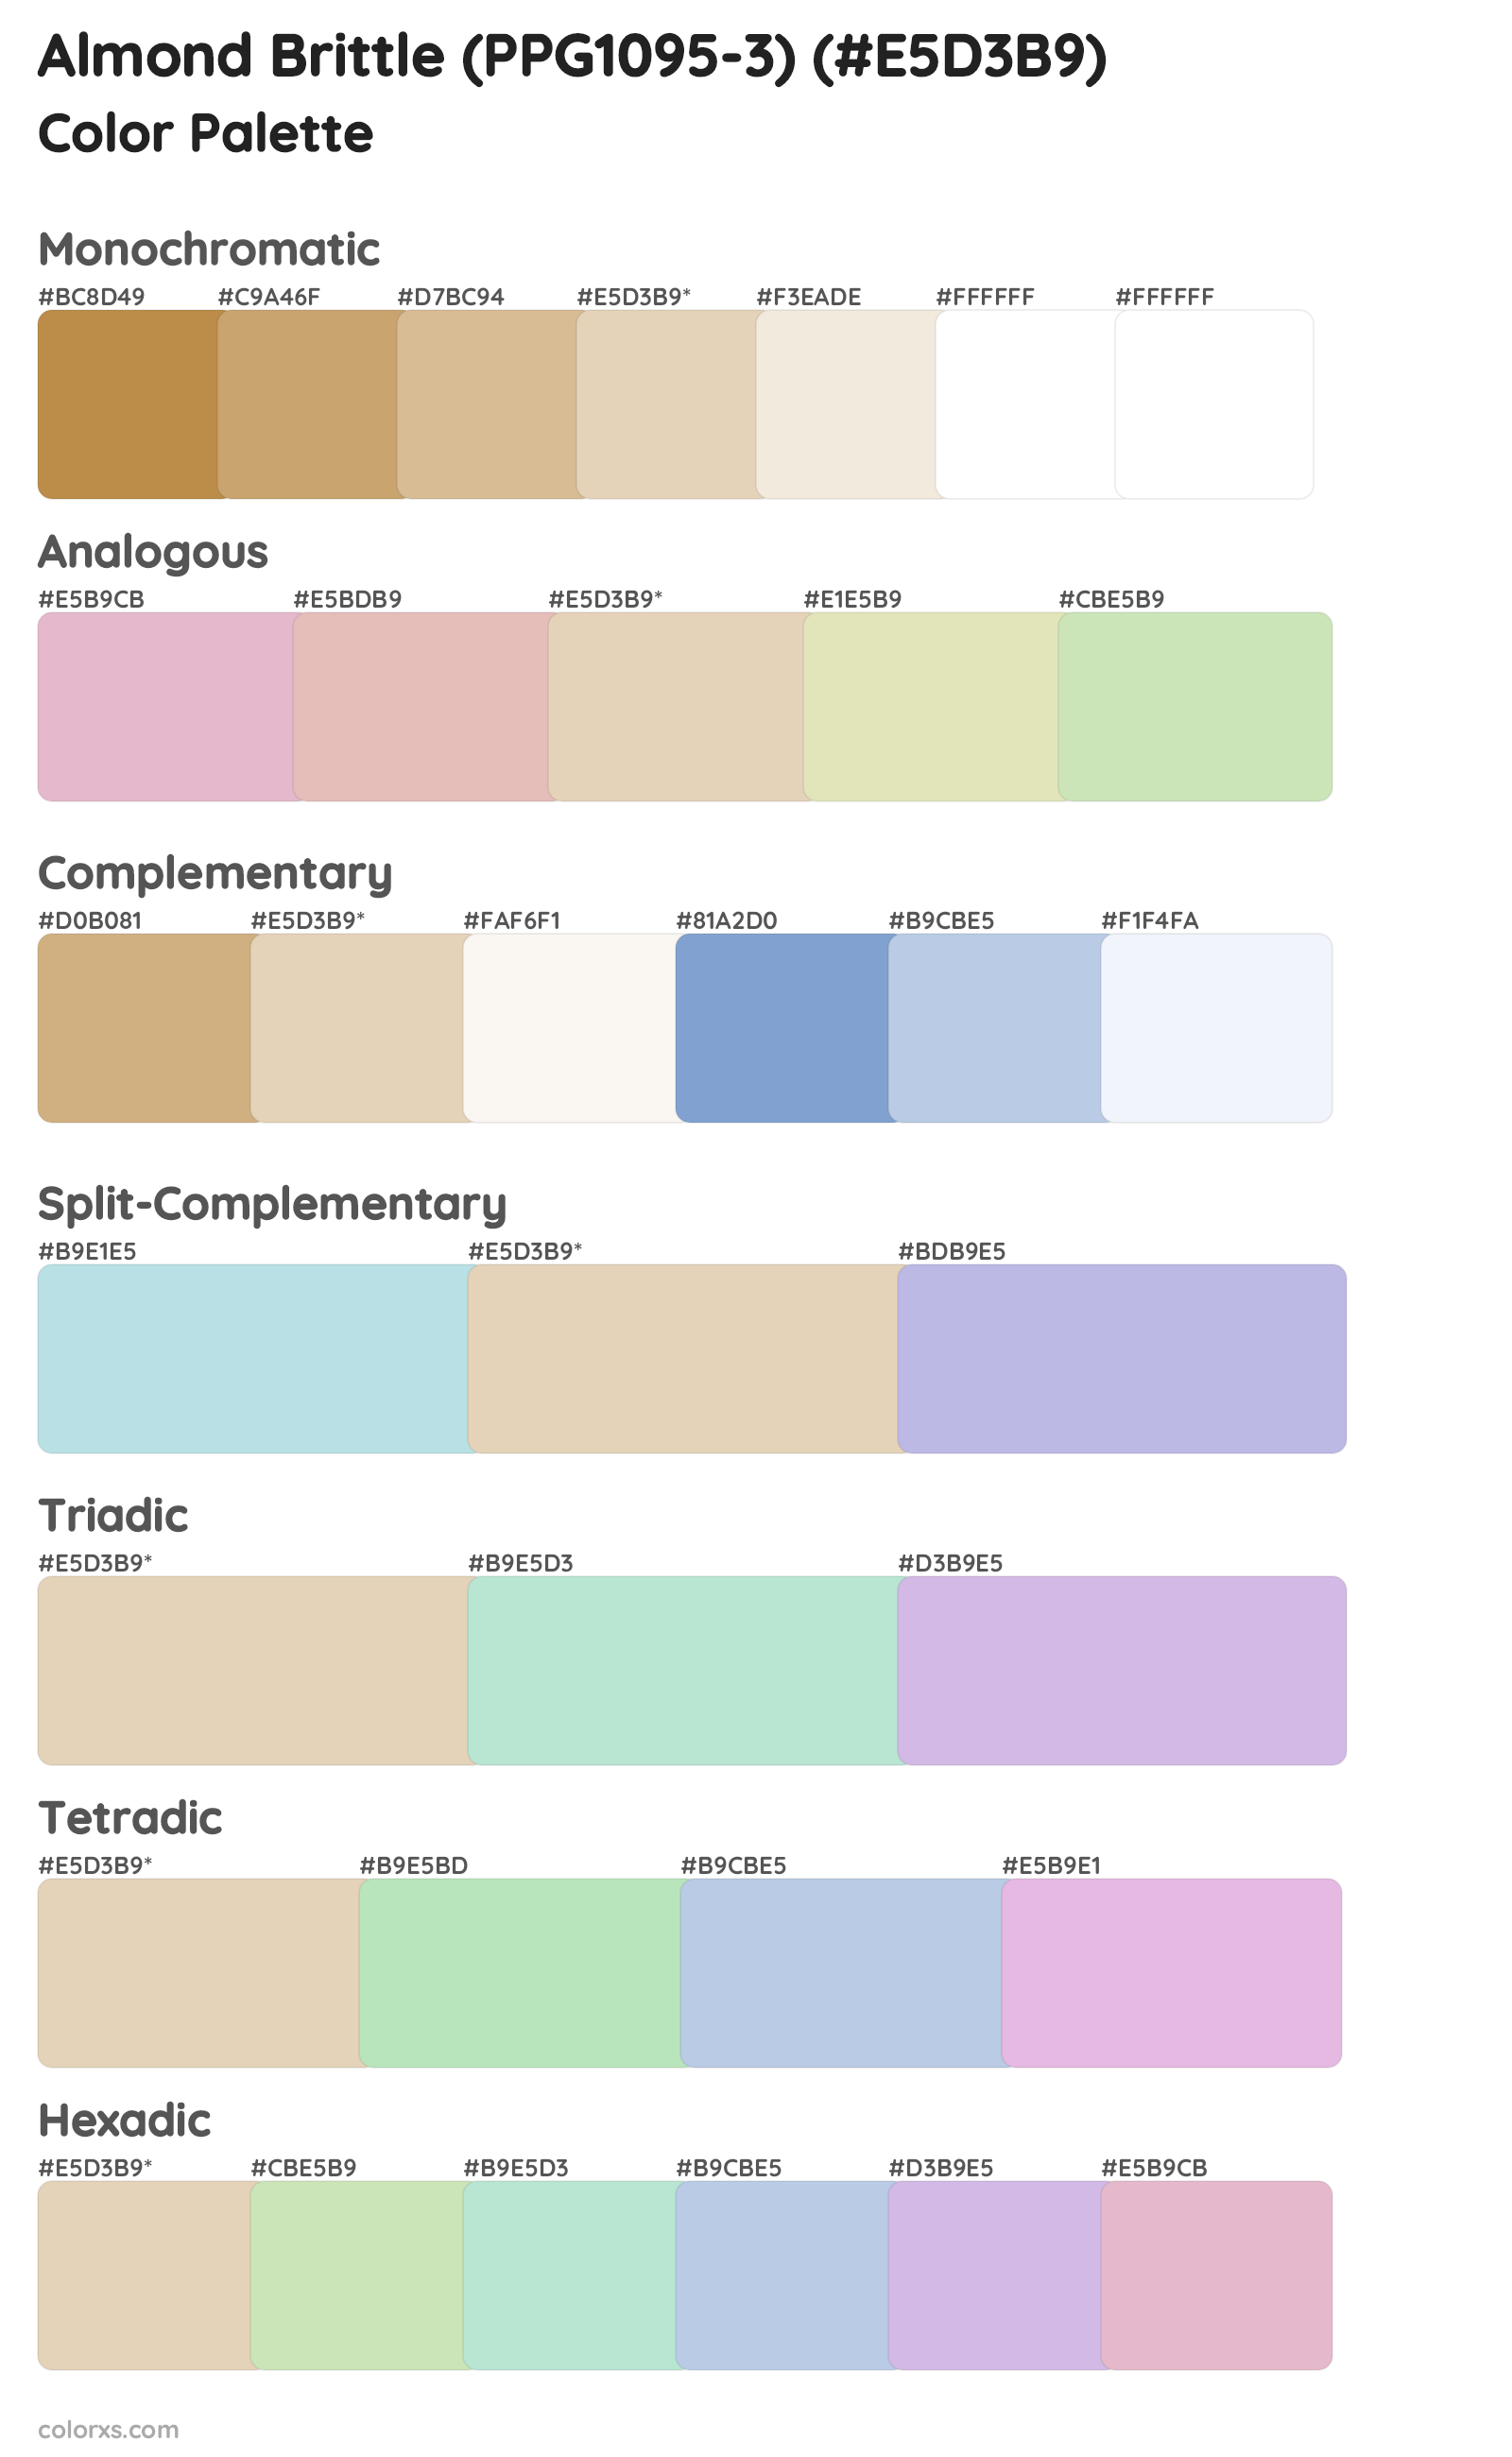 Almond Brittle (PPG1095-3) Color Scheme Palettes